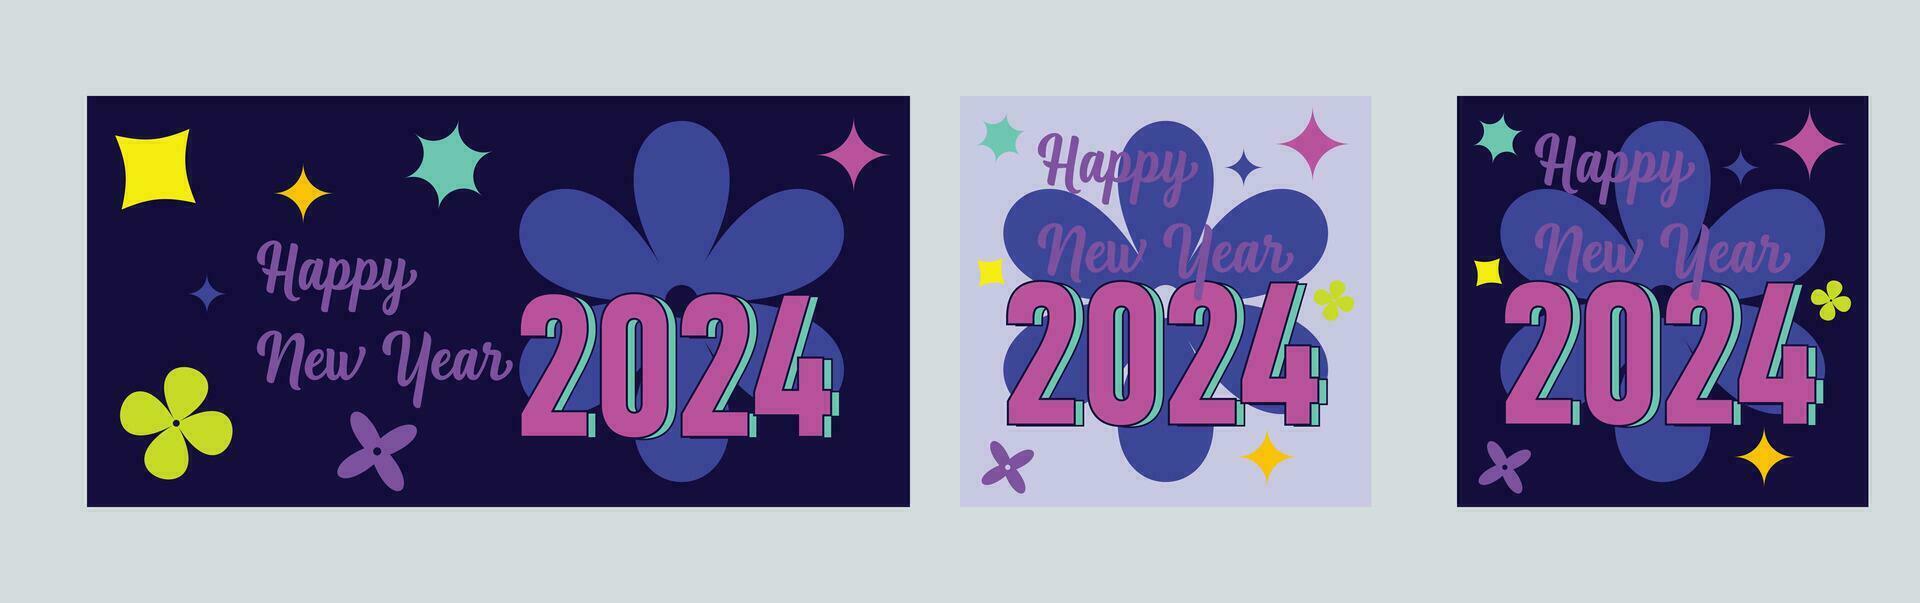 gelukkig nieuw jaar 2024 met kleurrijk minimalistisch modieus ontwerp. gelukkig nieuw jaar 2024 plein sjabloon. groet achtergrond ontwerpen, nieuw jaar, en sociaal media promotionele inhoud. vector illustratie